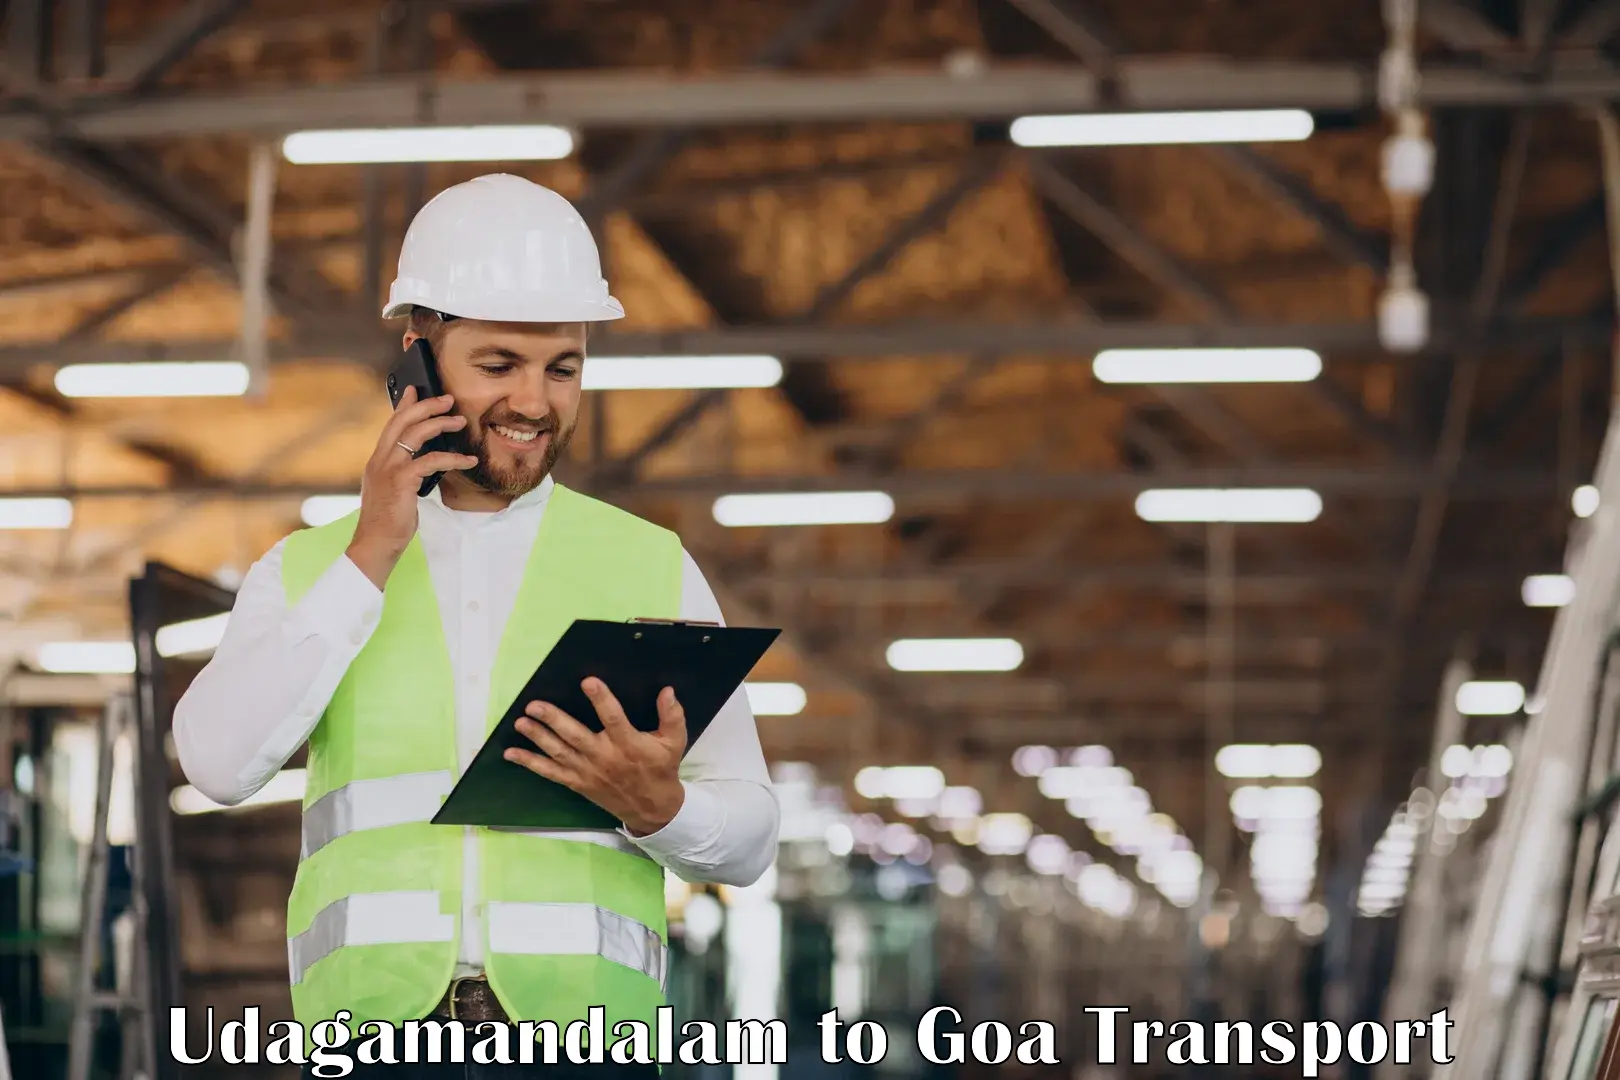 All India transport service Udagamandalam to NIT Goa